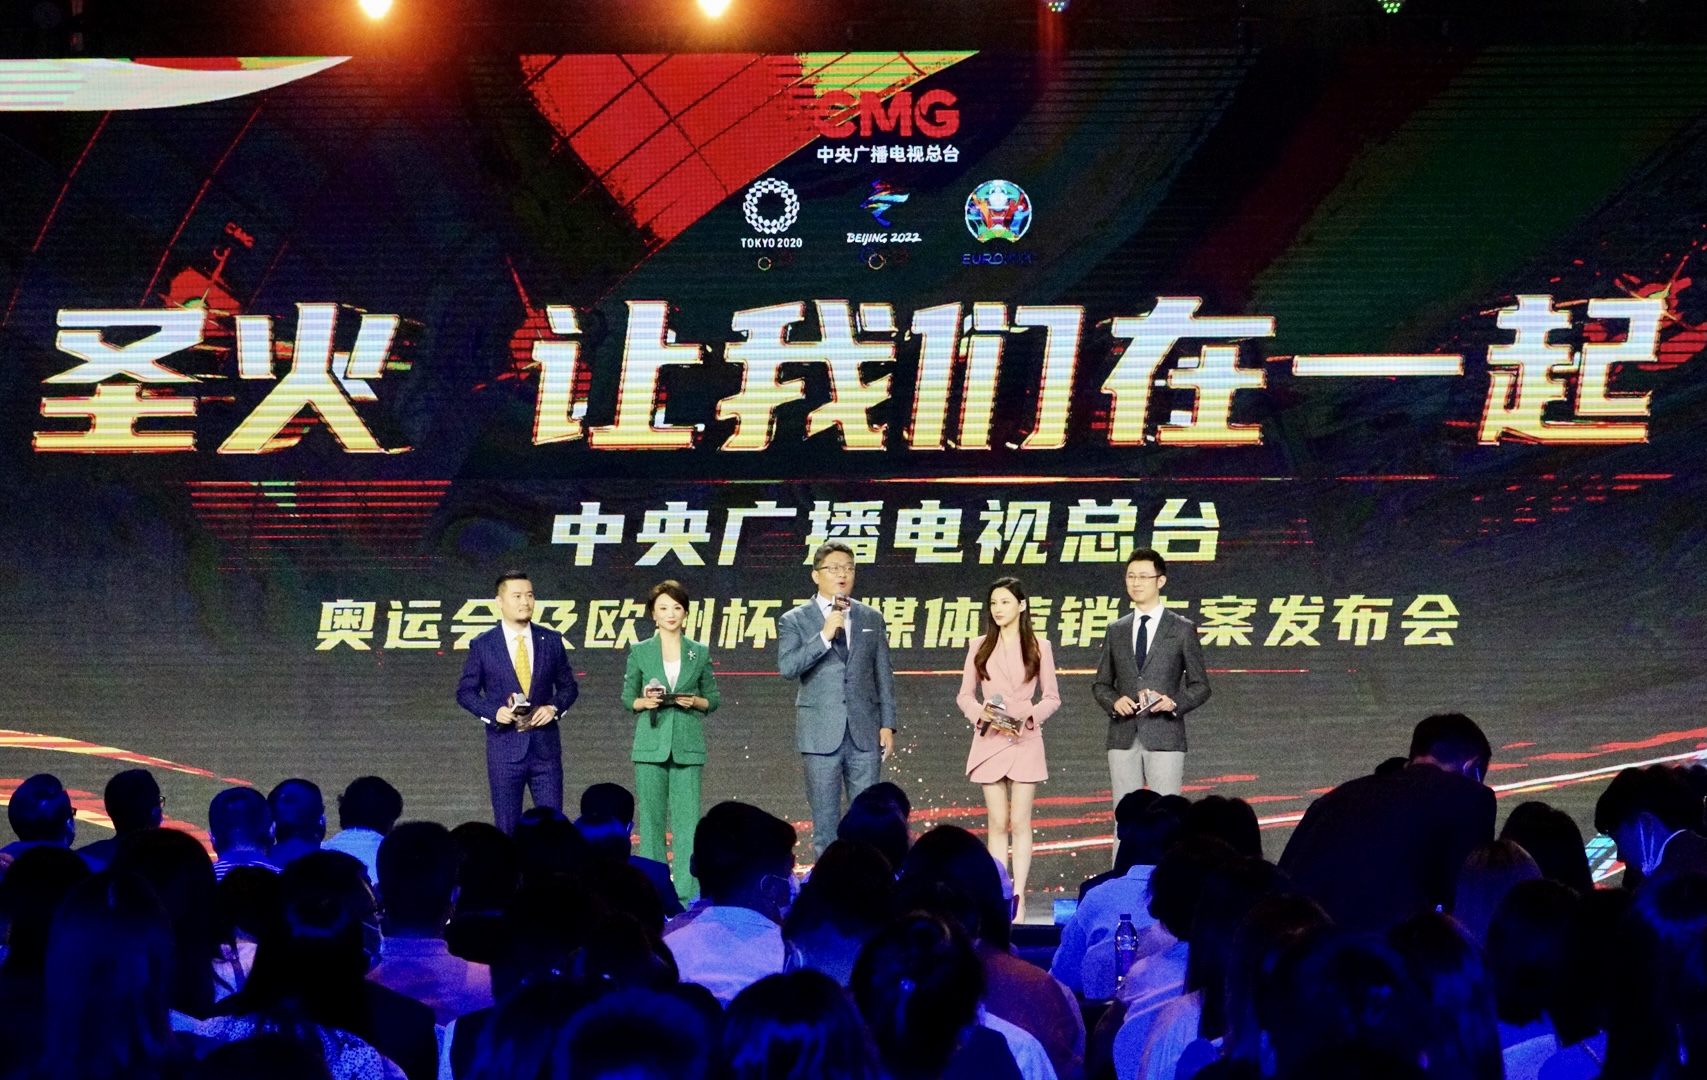 中央广播电视总台奥运会及欧洲杯融媒体营销方案在上海发布